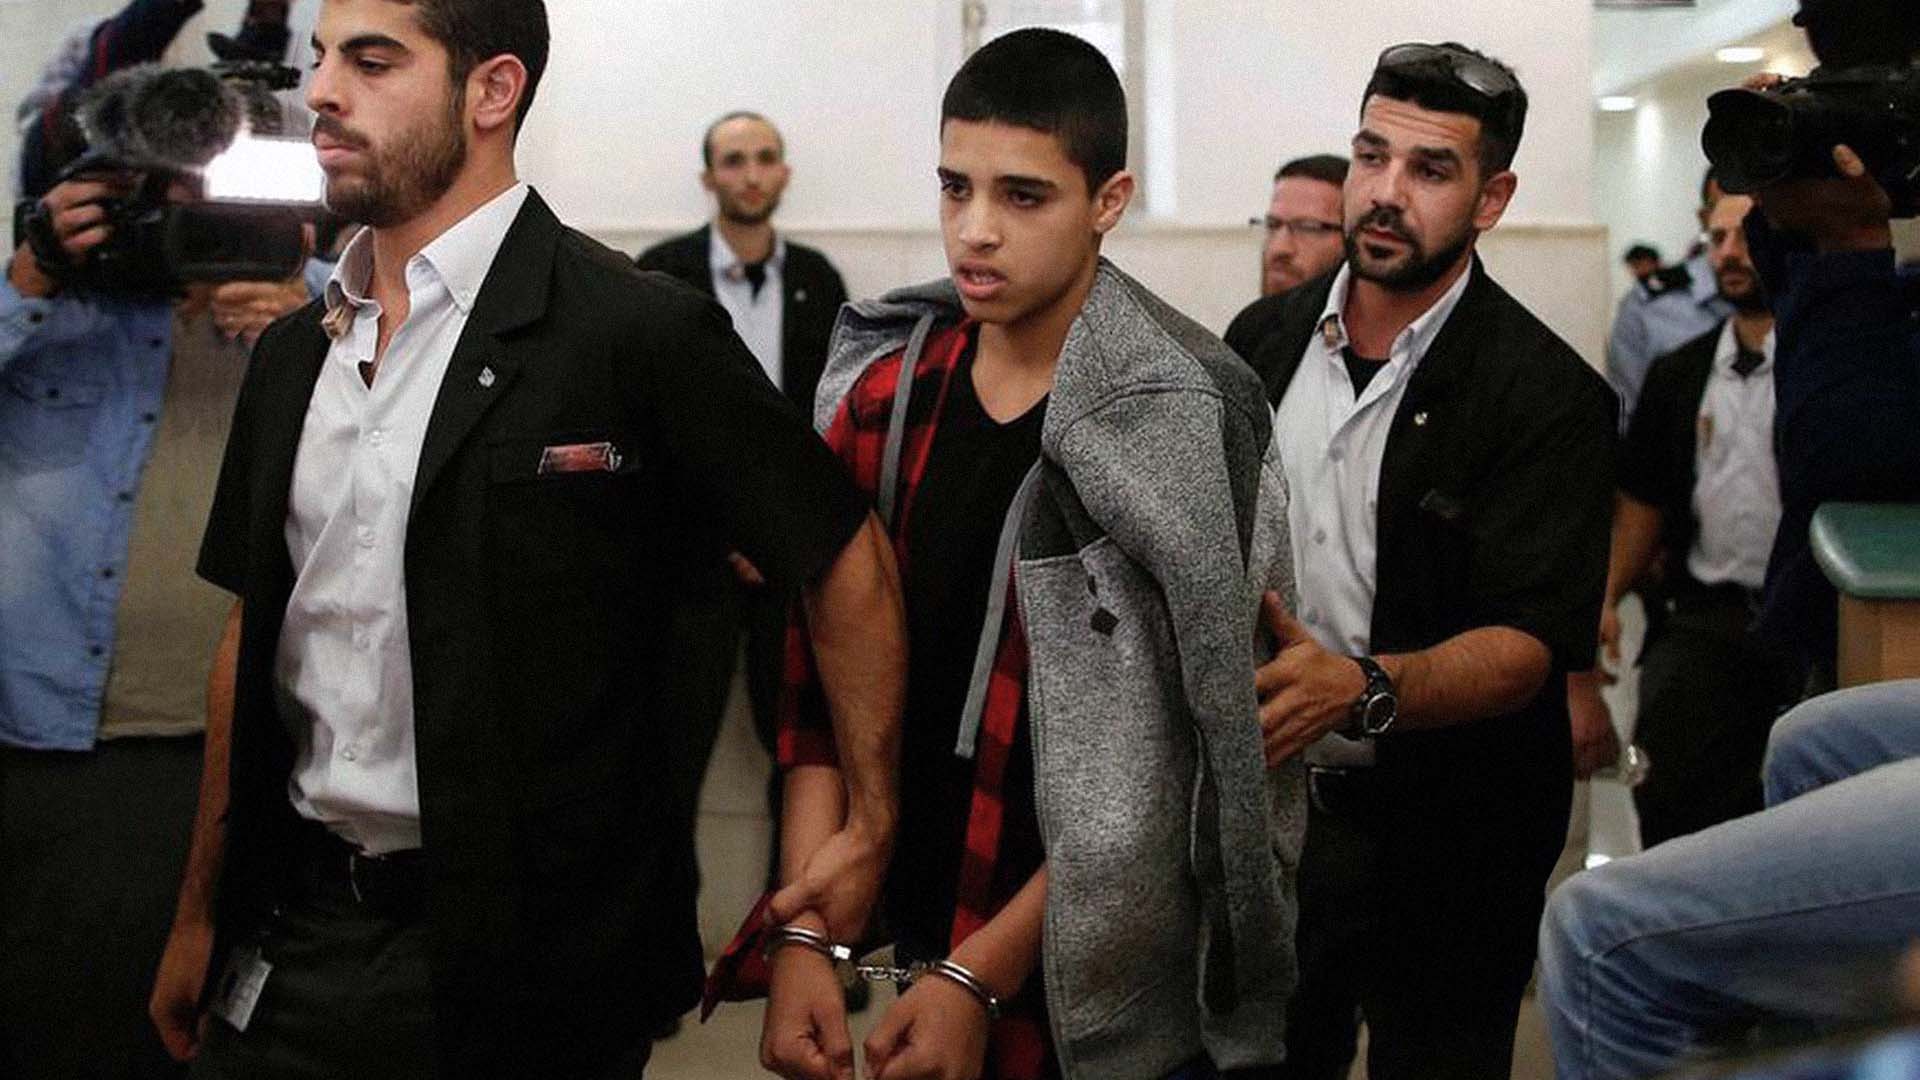 صورة إسرائيل تؤكد أن إسقاط تهمة الإرهاب عن أحمد المناصرة لا تعفيه من جريمة أنه فلسطيني